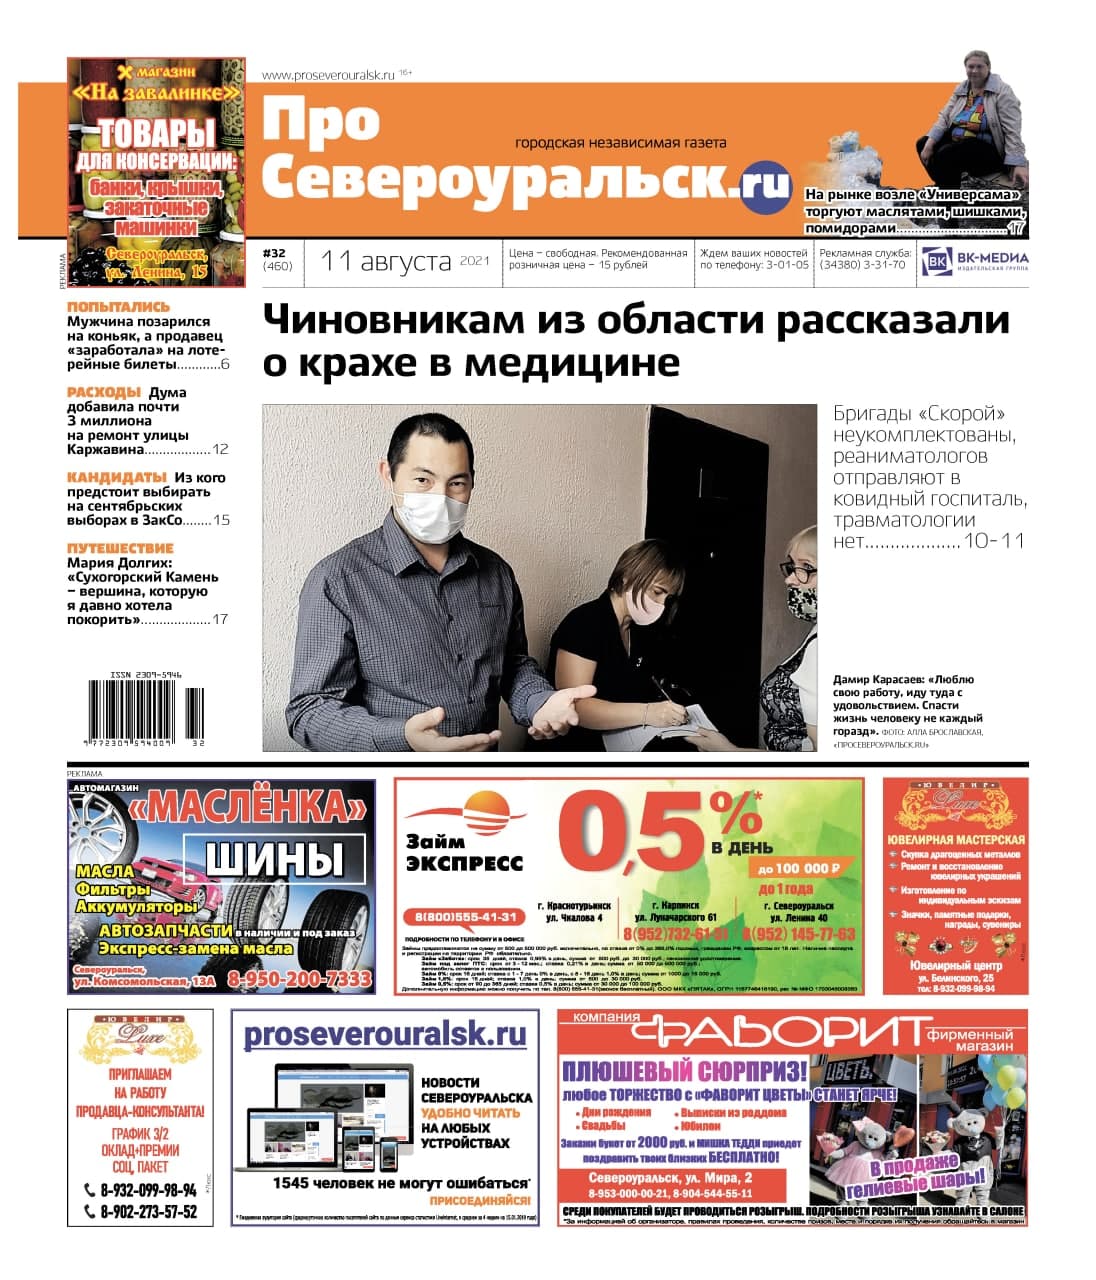 Медицина Североуральска - о чем рассказали Денису Демидову? Читайте свежий номер газеты!